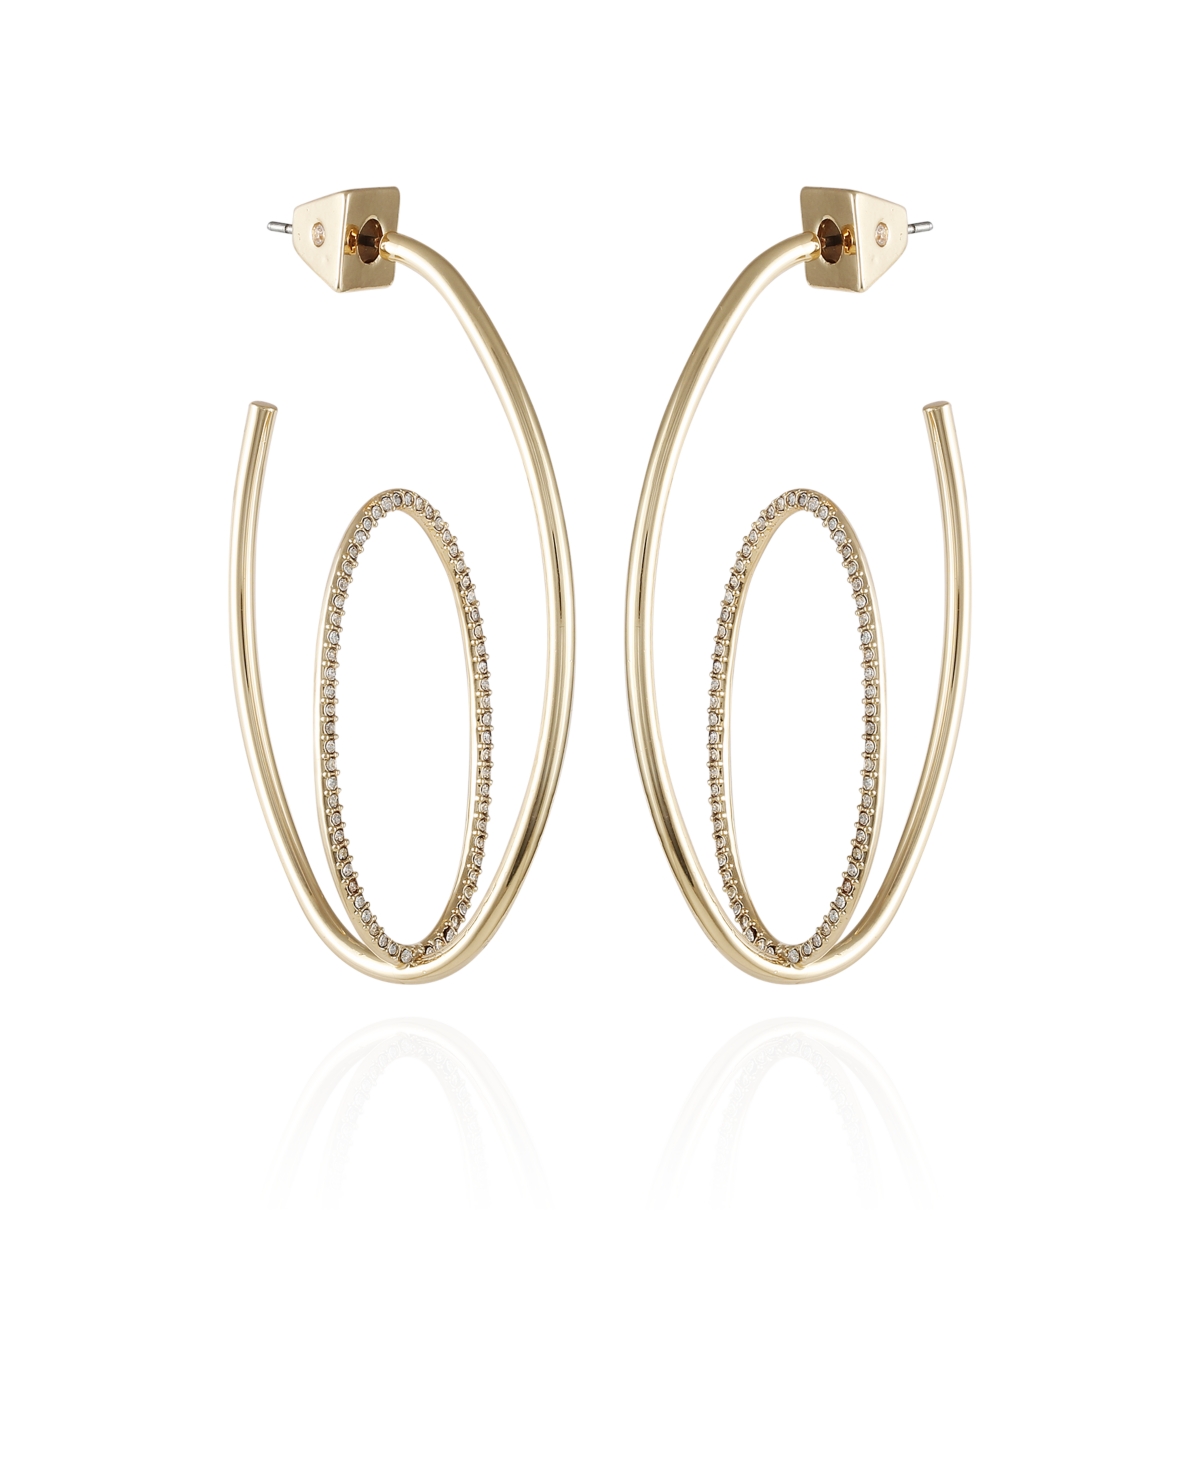 Vince Camuto Orbital Double Hoop Earrings In Gold